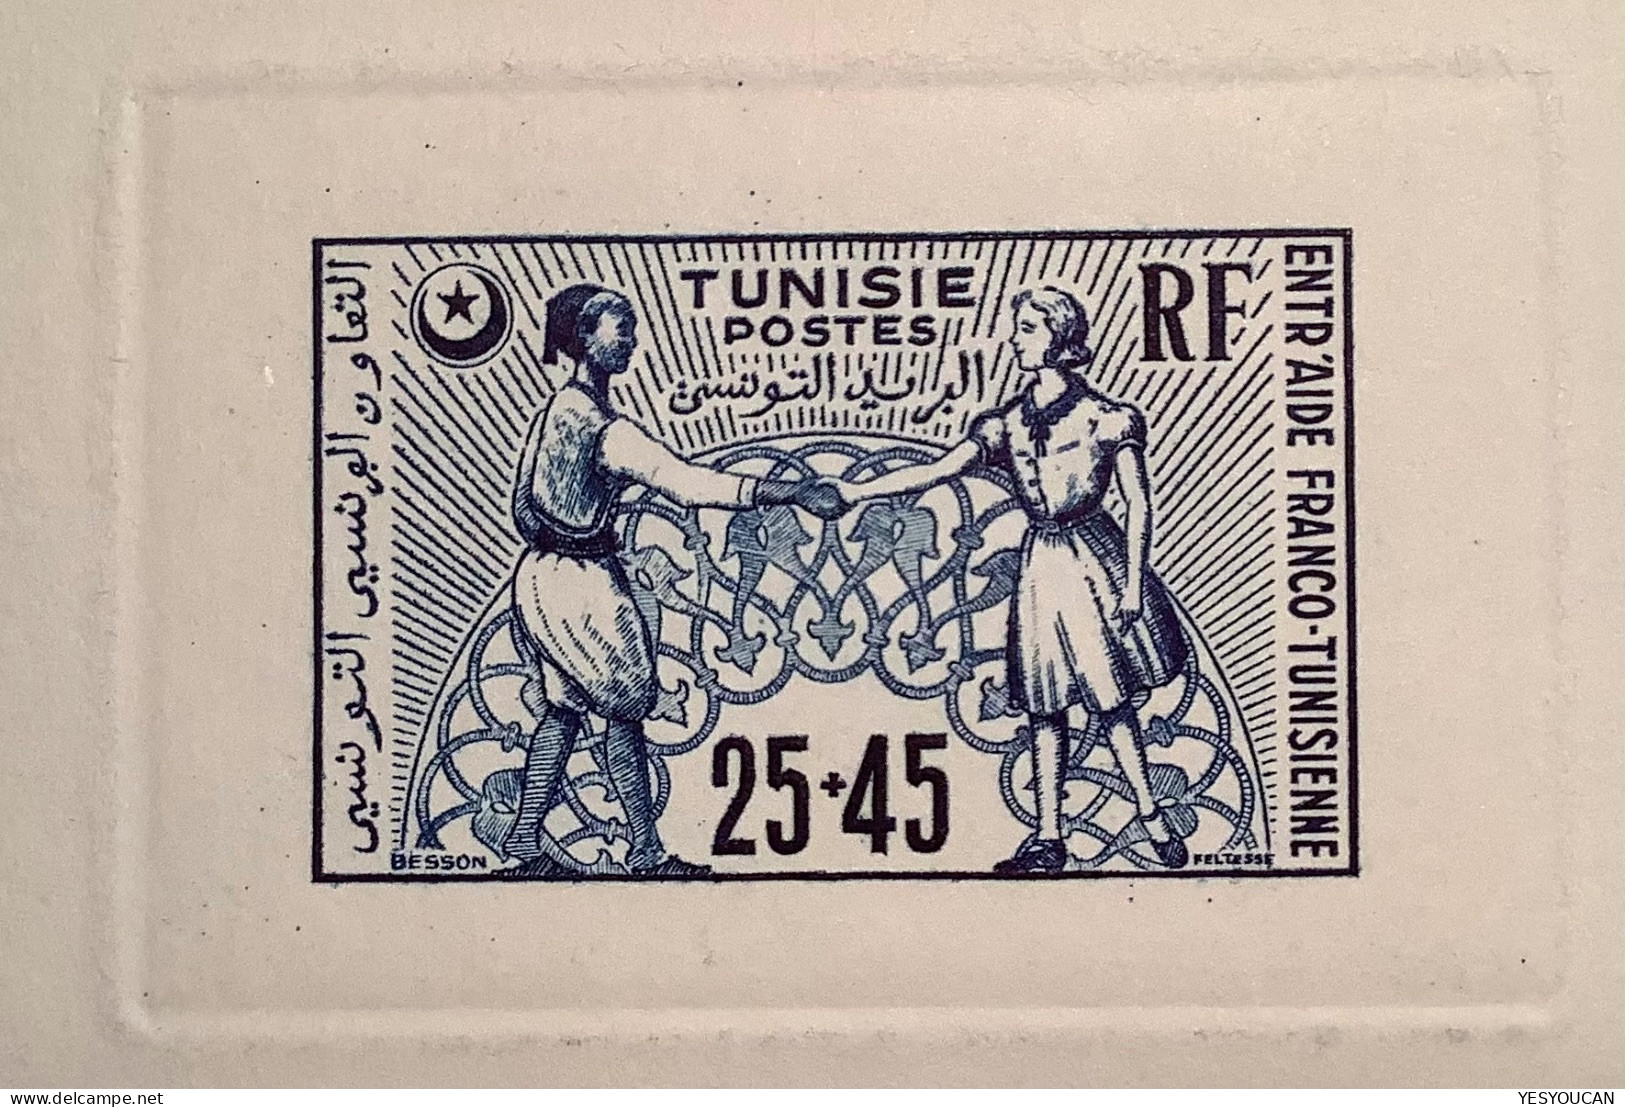 TUNISIE 1950 #336 25f+45f Fond D‘ Entraide Franco-tunisien épreuve De Luxe Rare (France Amitié - Unused Stamps